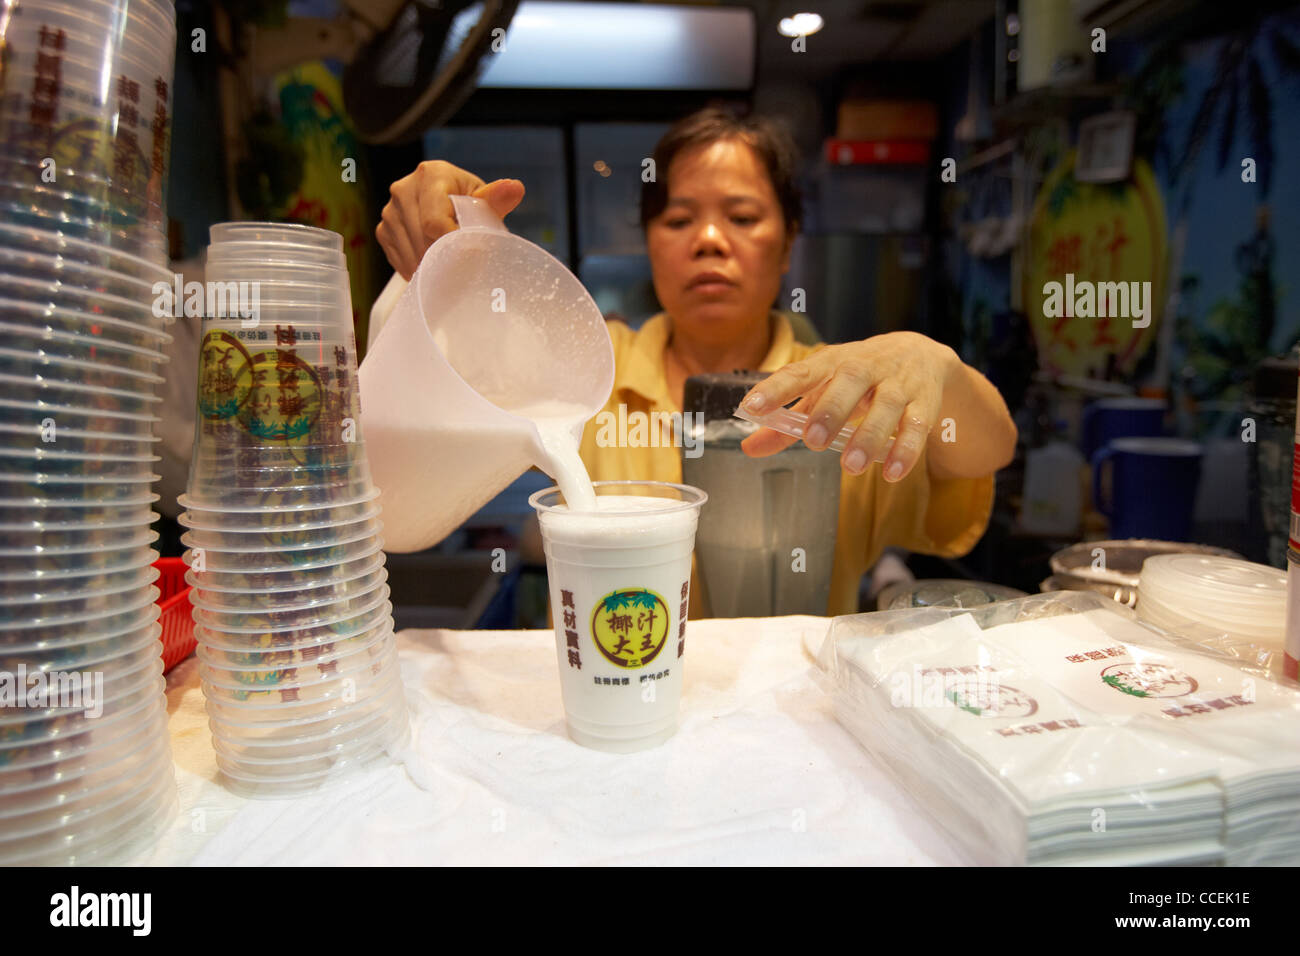 Verser un verre de lait de coco à un décrochage à Mong Kok Hong Kong Hong Kong Chine Asie Banque D'Images